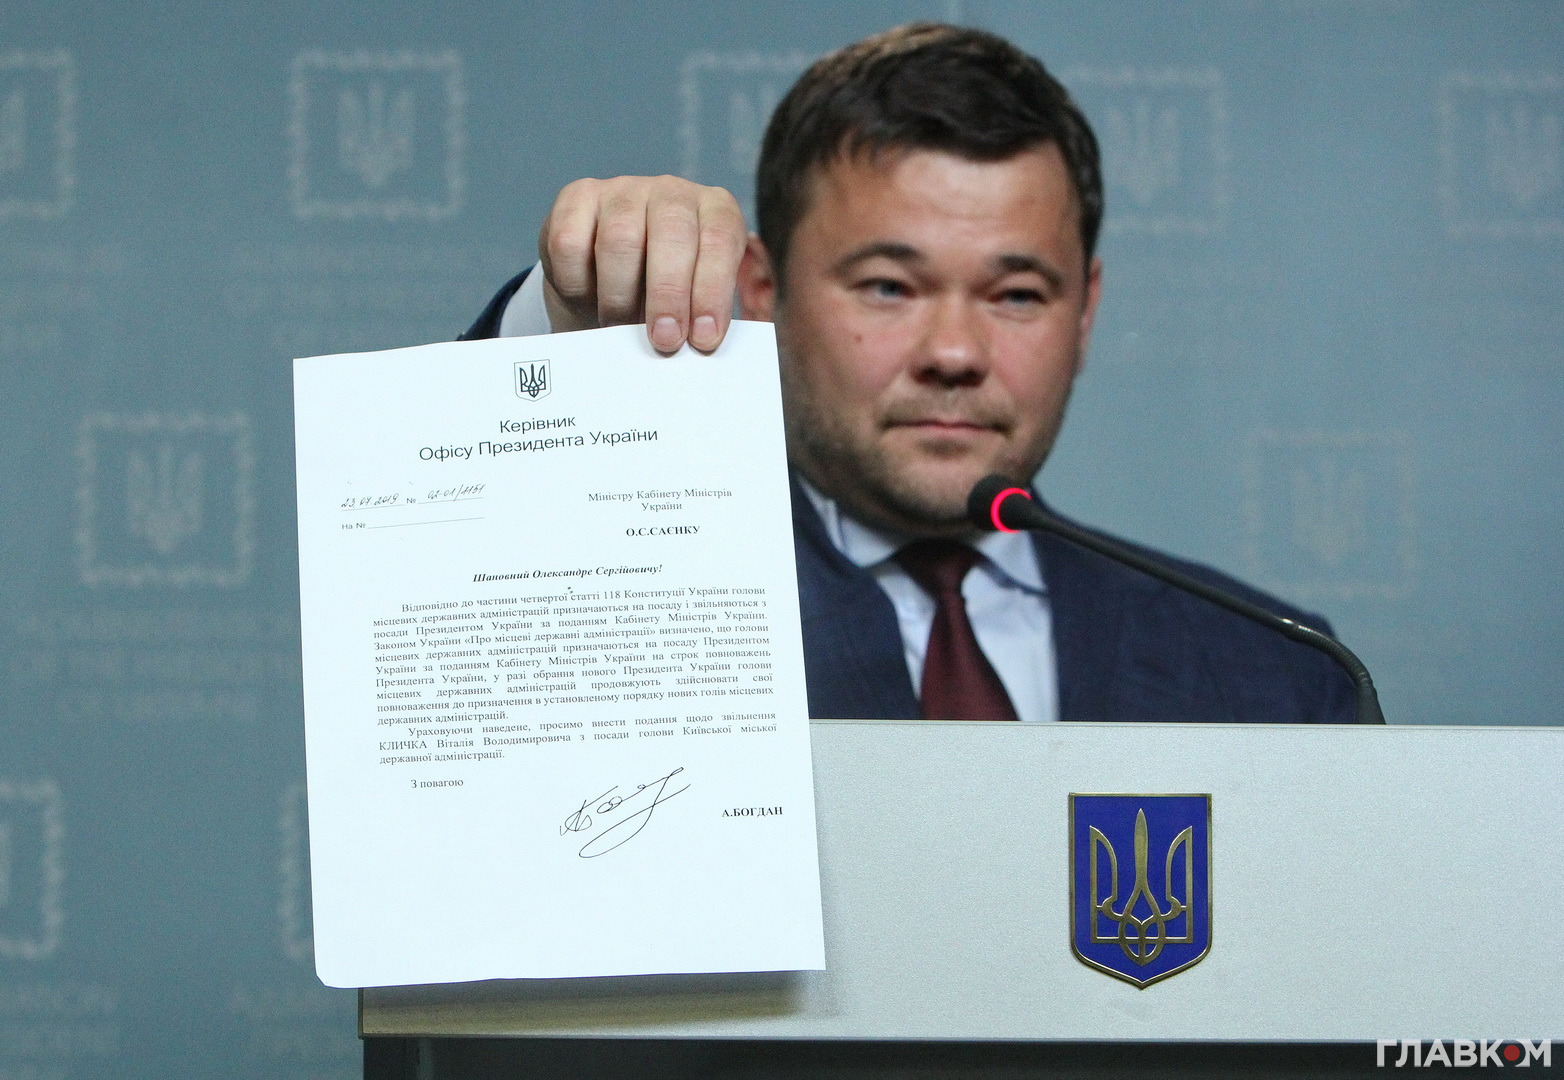 Андрій Богдан продемонстрував журналістам своє звернення до Кабінету міністрів